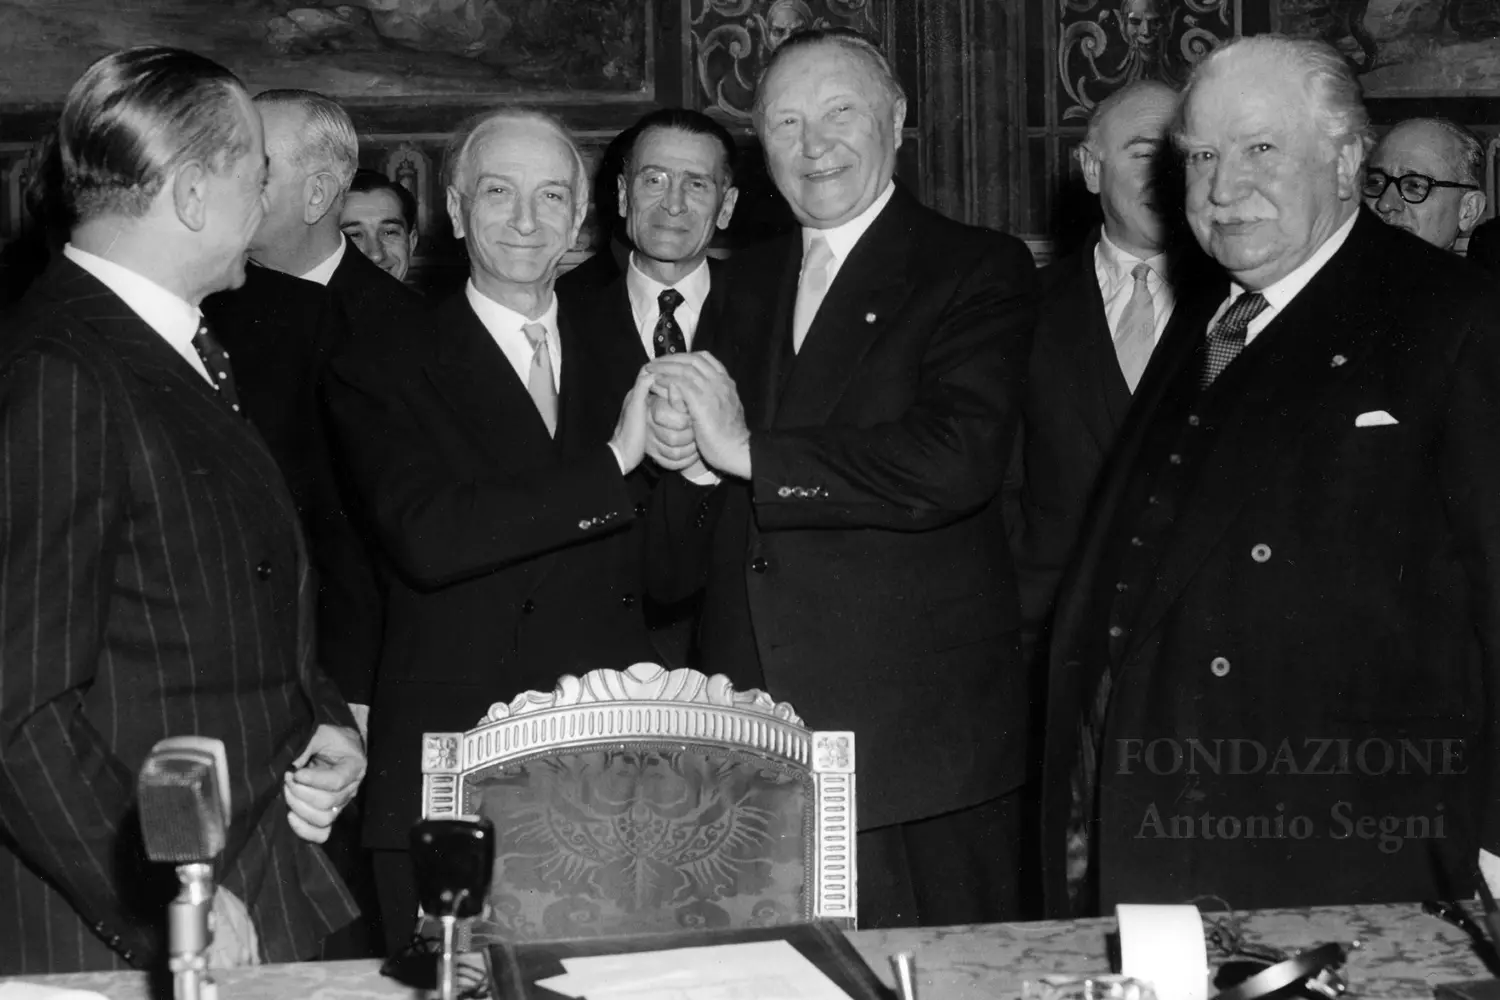 Segni e il tedesco Adenauer dopo la firma del trattato (foto concessa dalla Fondazione Antonio Segni)